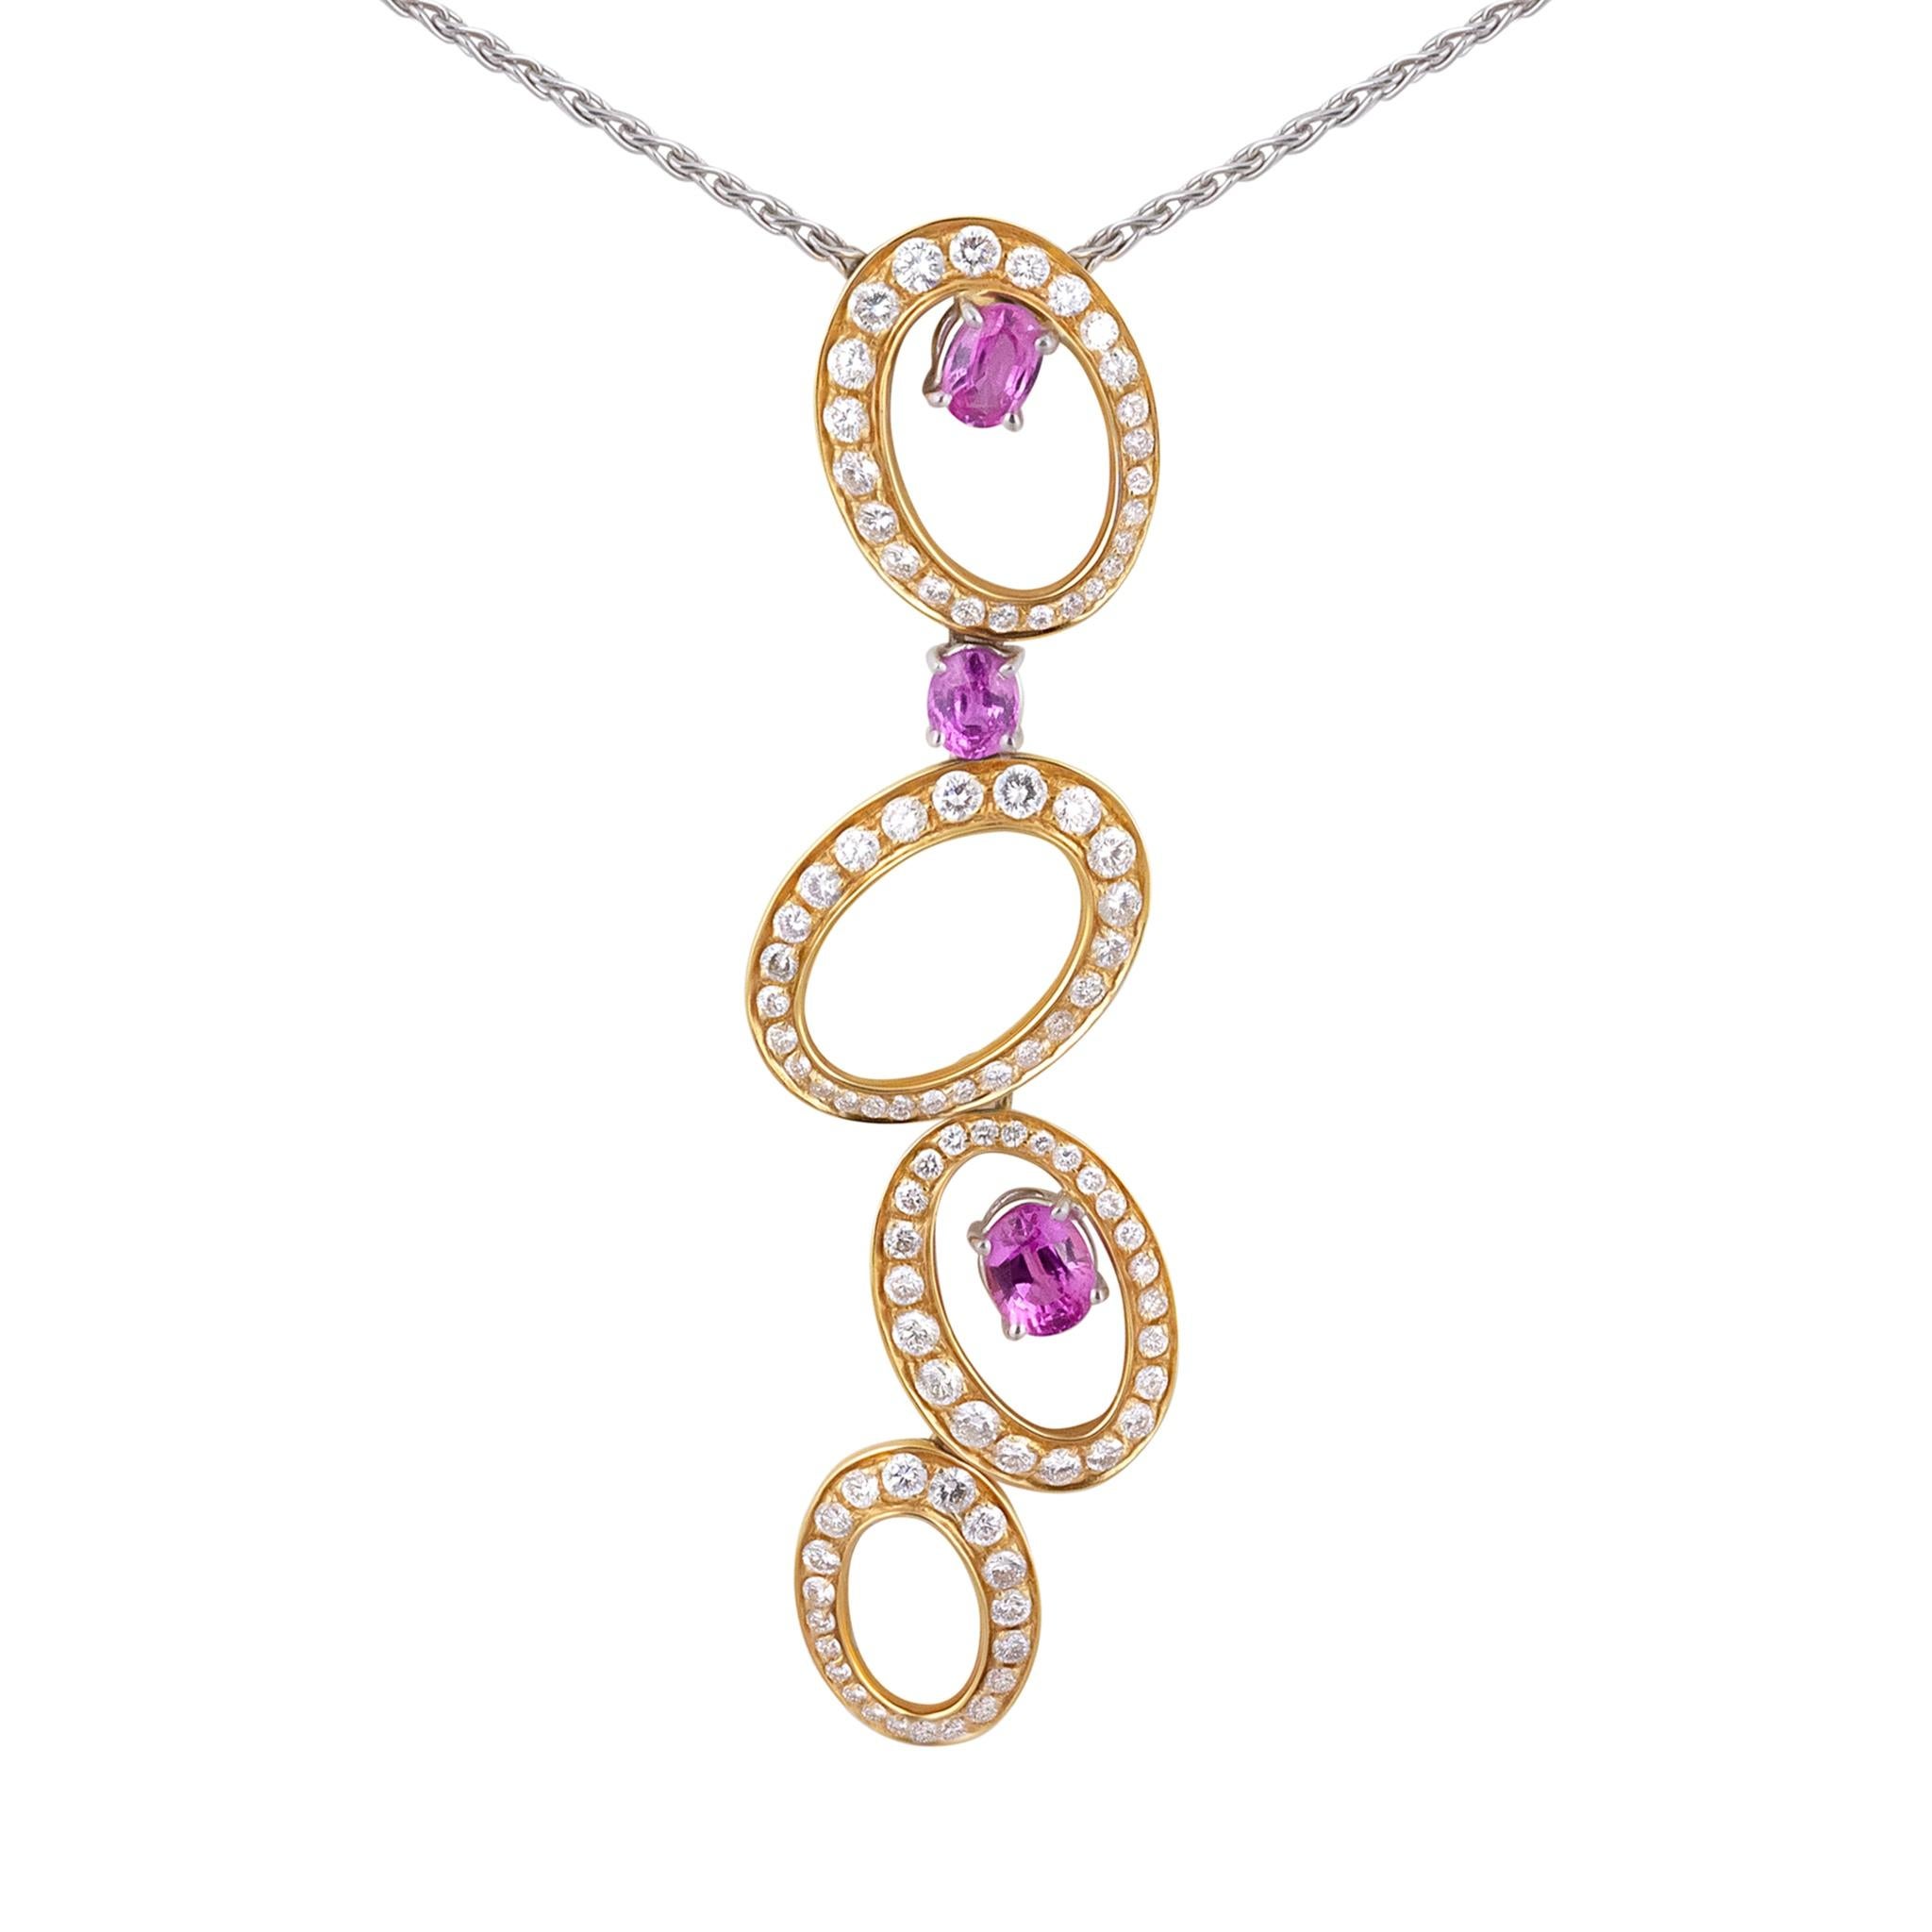 IO SI Halskette
18K Weiß & Gelbgold
Diamant: 2.00ctw
Saphir: 2,06ctw
Einzelhandelspreis: $25.000,00
SKU: BLU01855
Italienisch gemacht